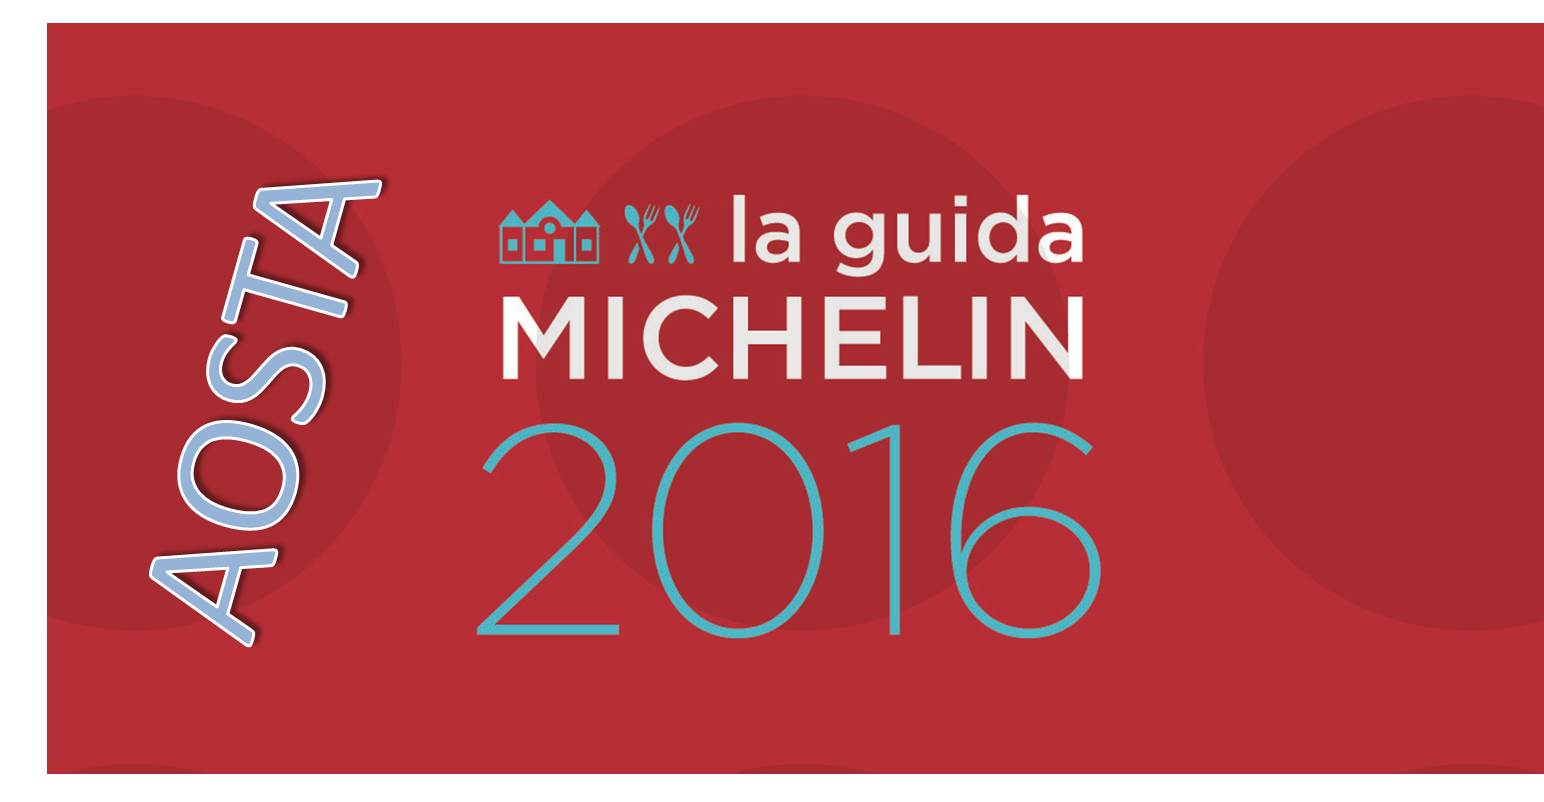 Migliori ristoranti Michelin 2016 ad Aosta